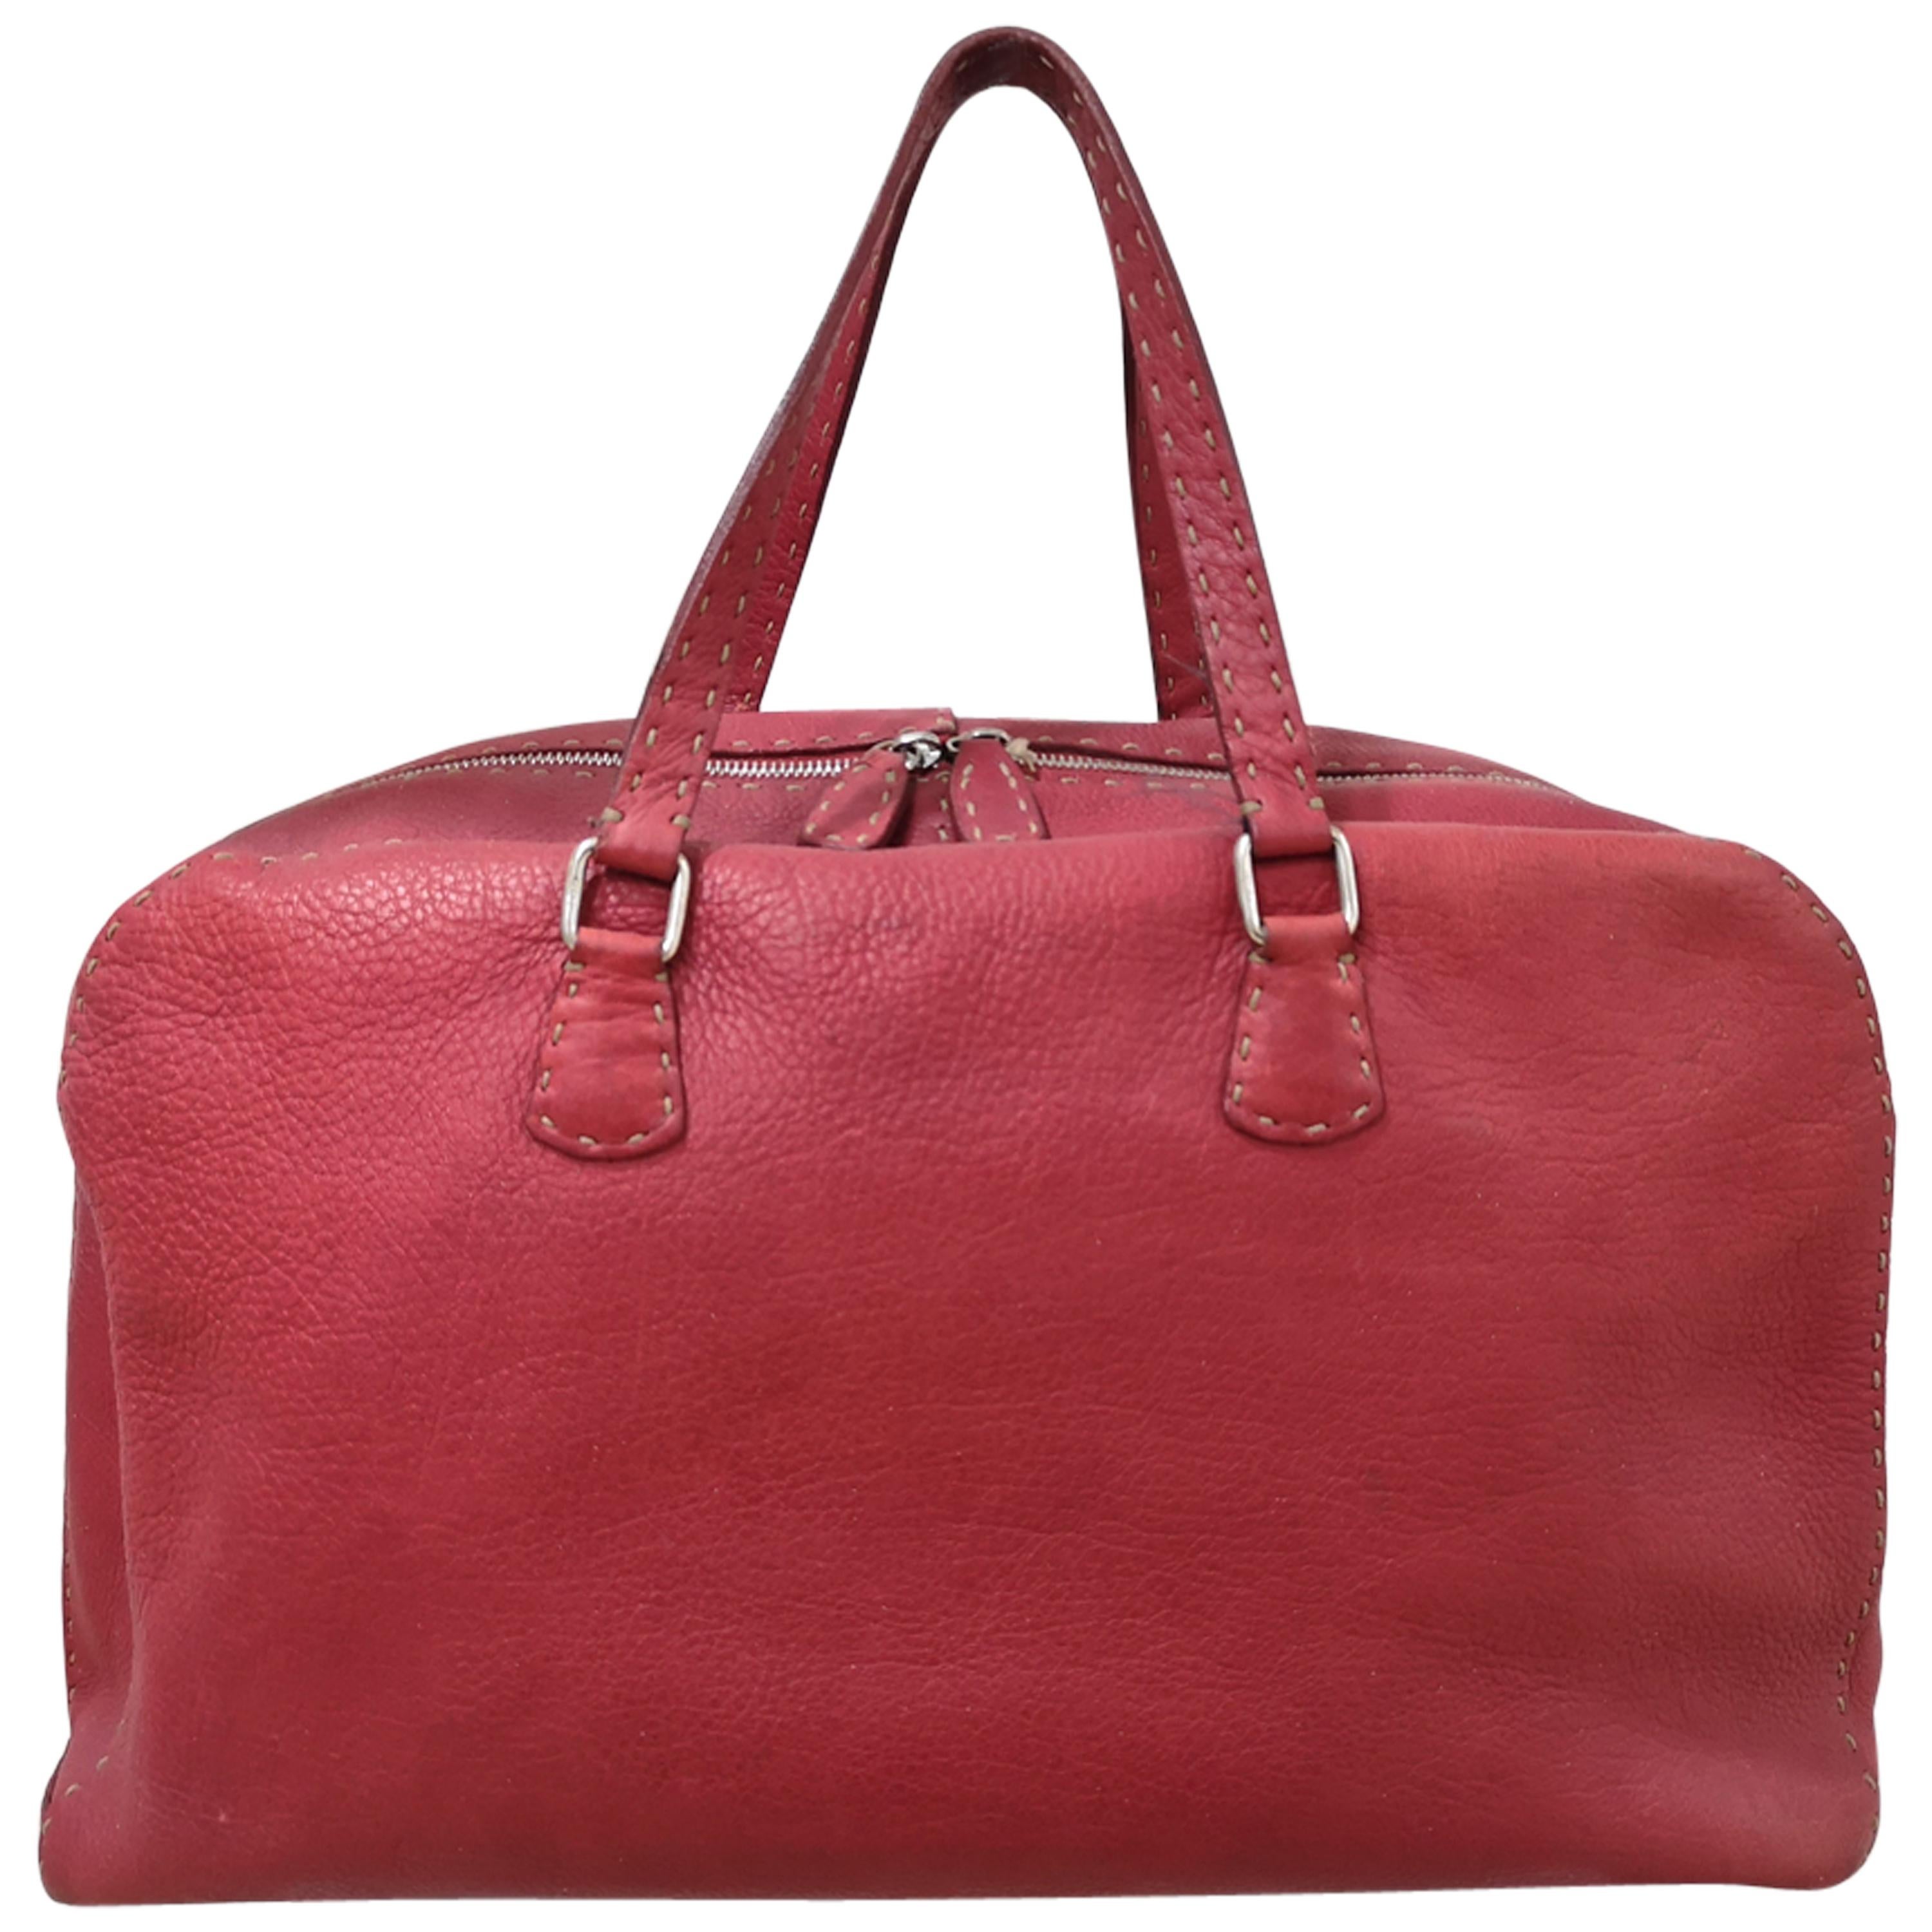 Fendi Selleria Red leather handbag